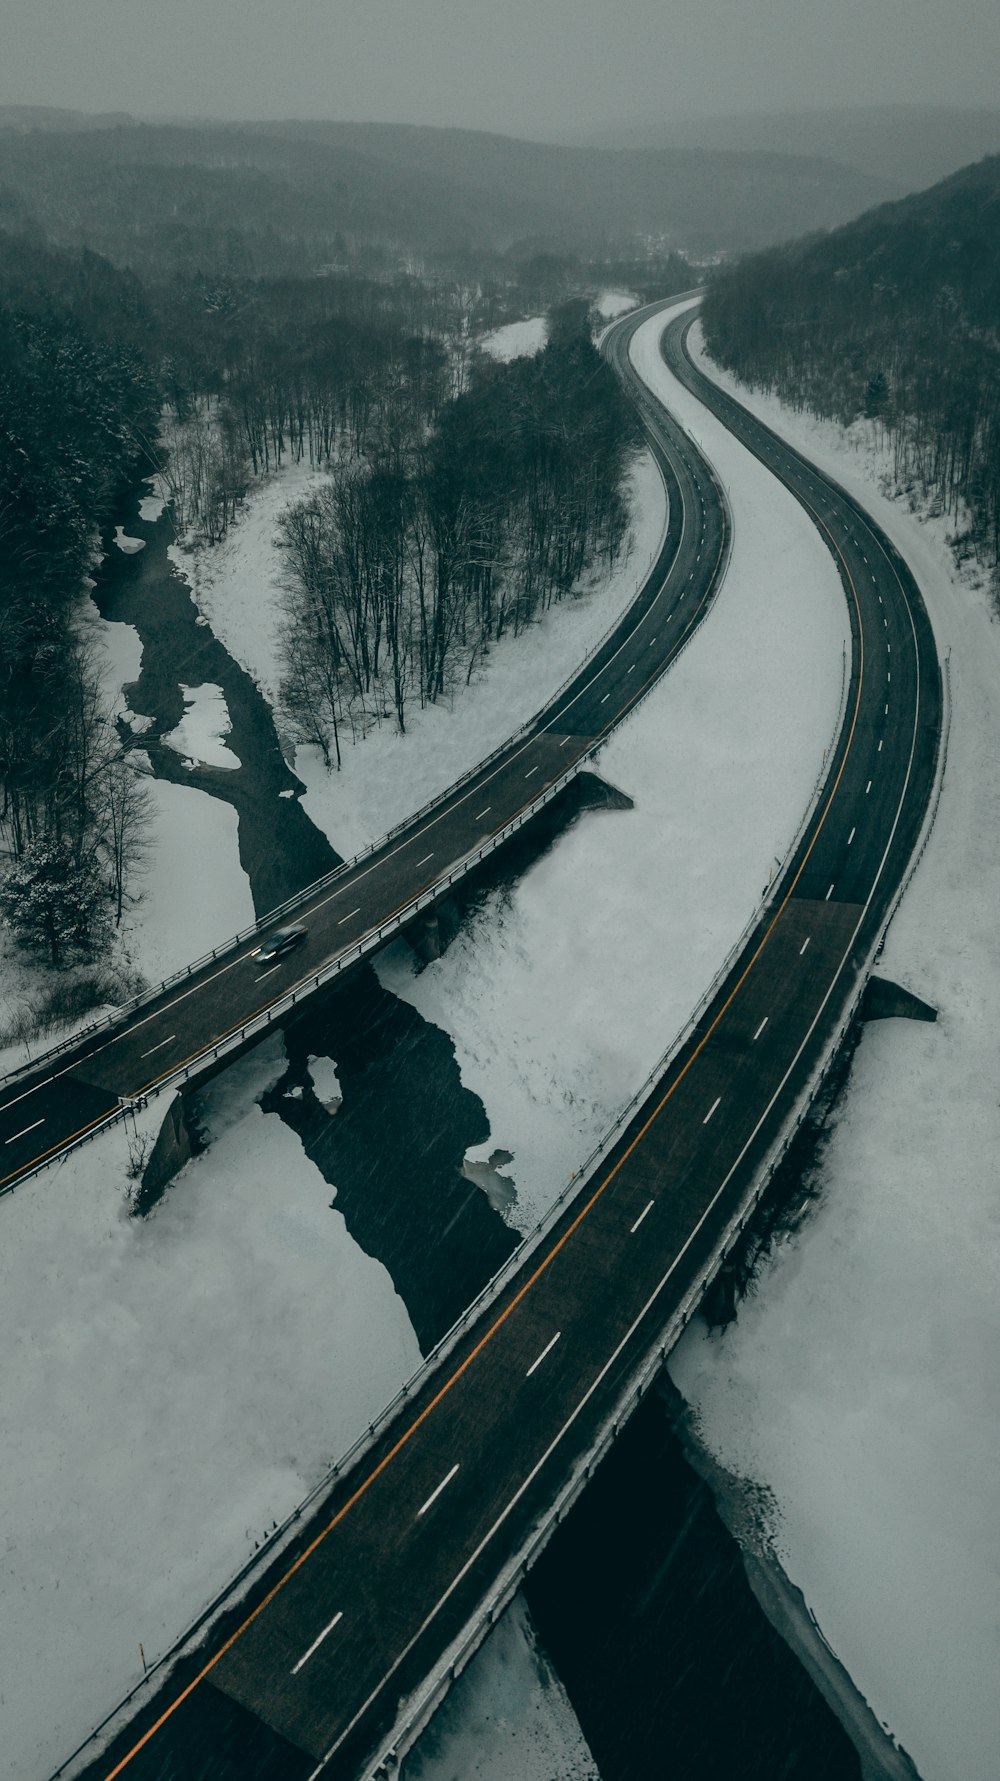 strada asfaltata nera coperta di neve